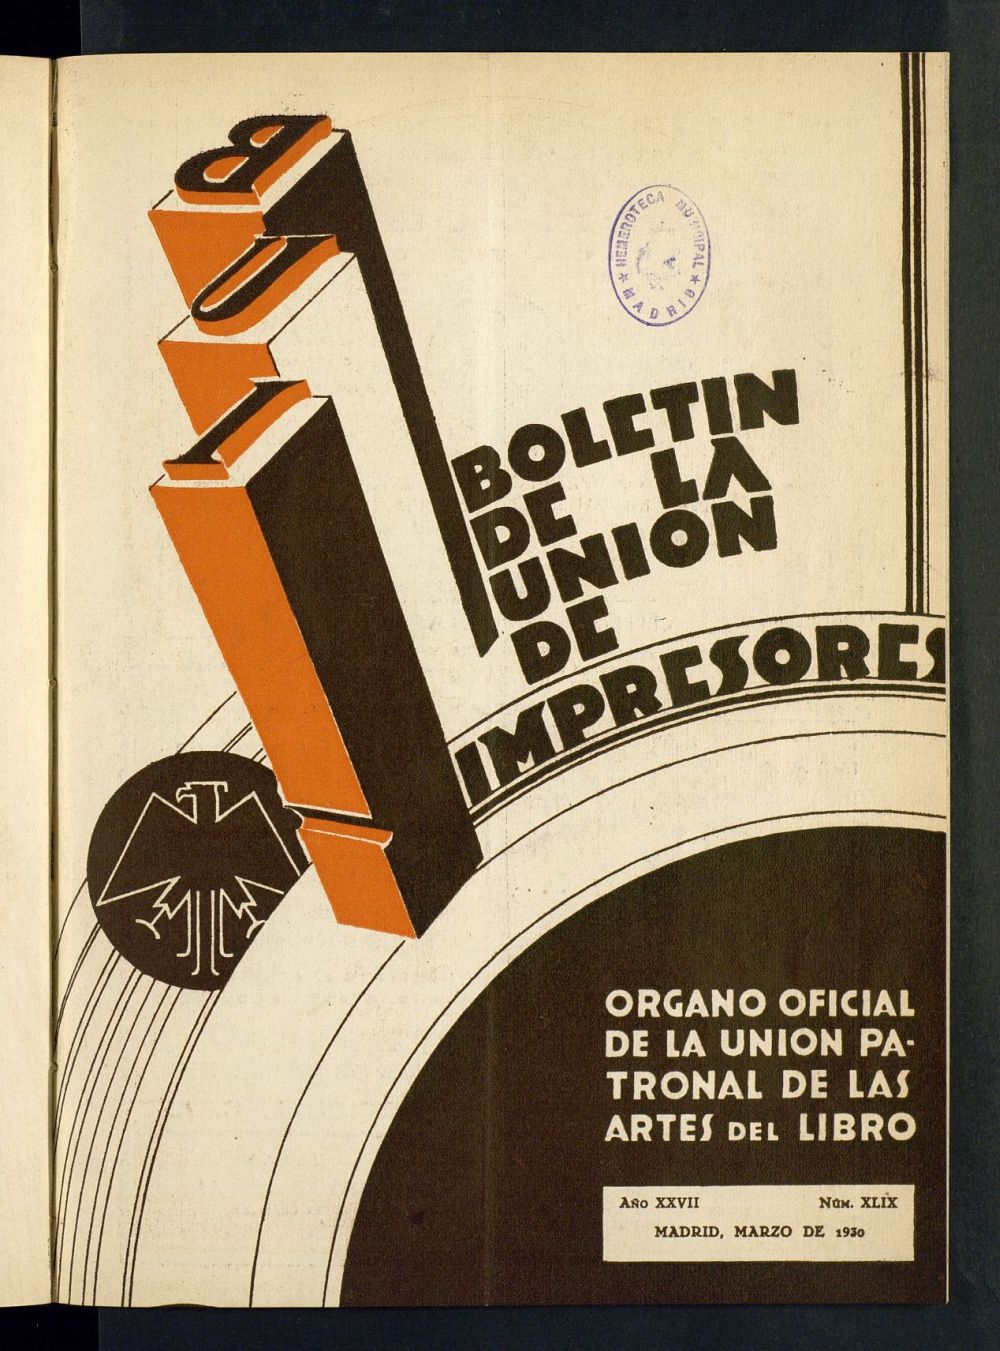 Boletn de la unin de impresores : rgano de la unin patronal de las artes del libro de marzo de 1930